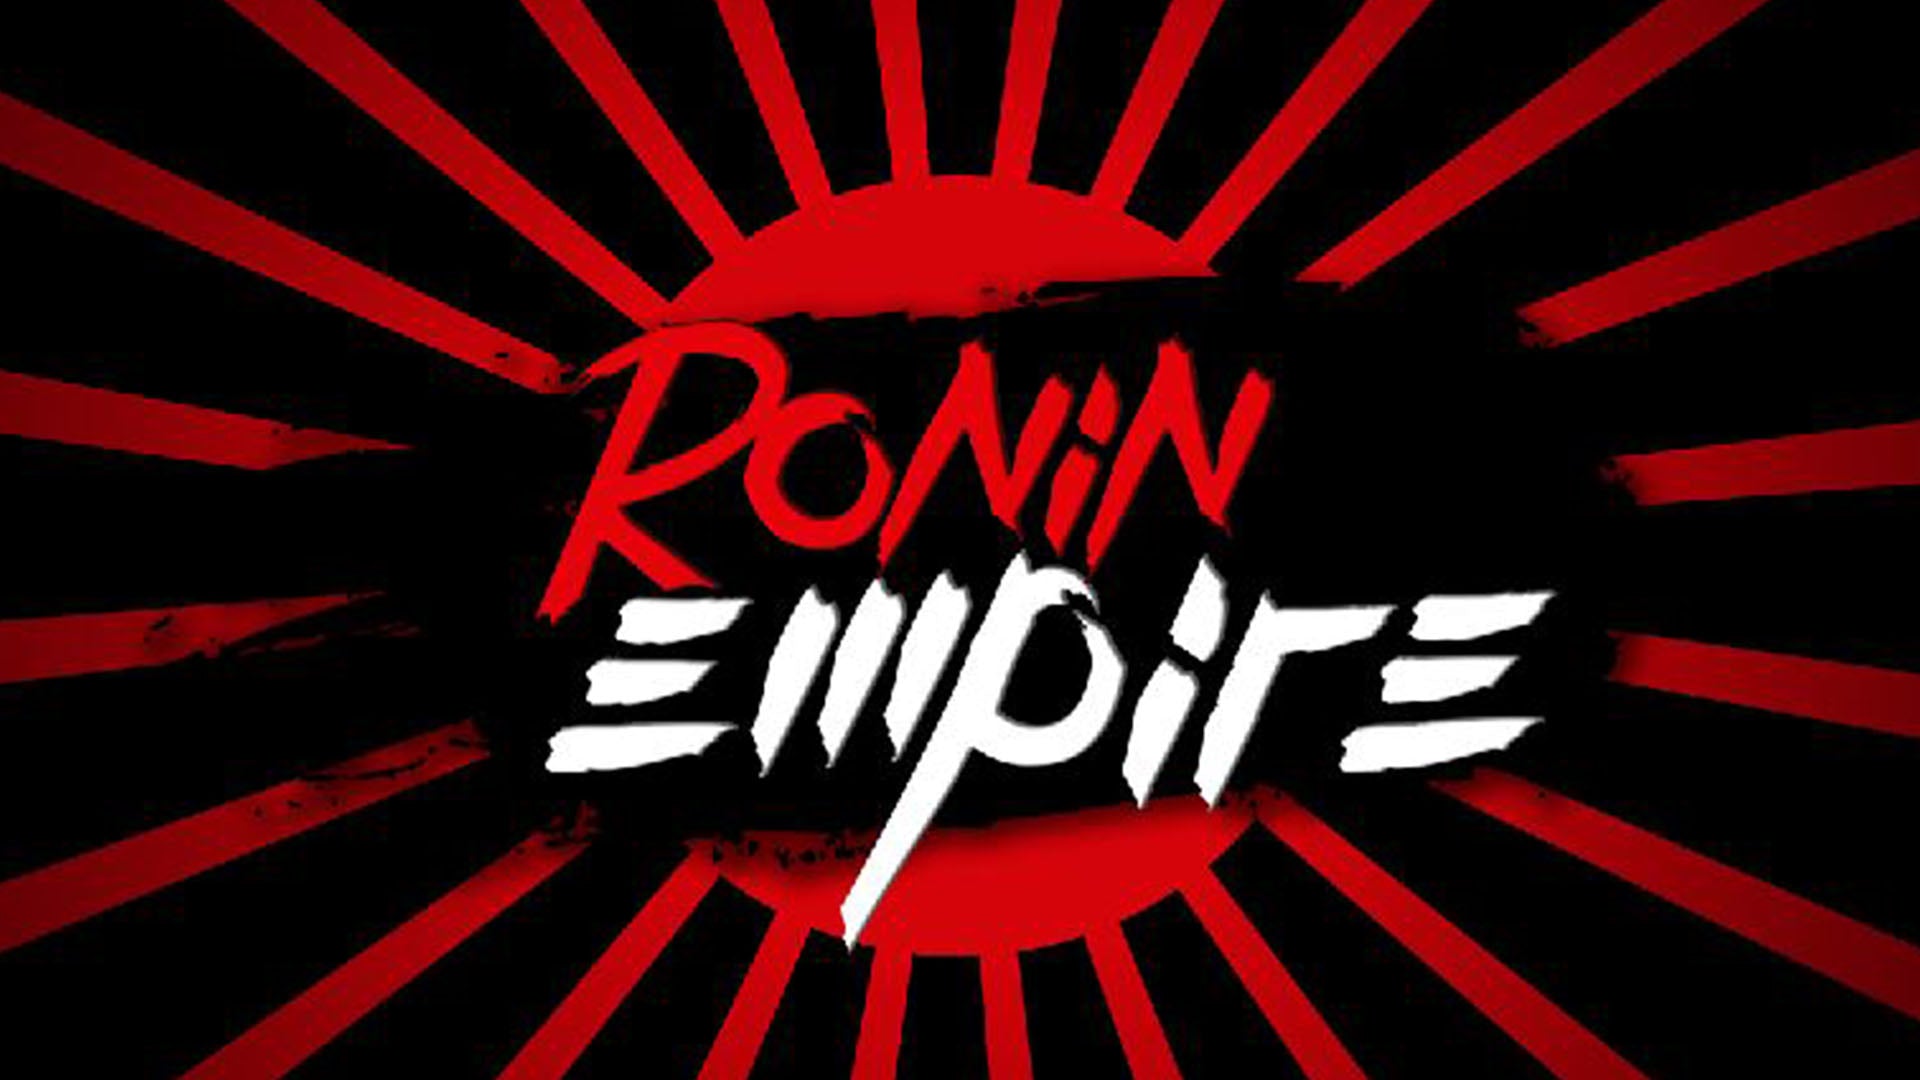 Ronin Empire